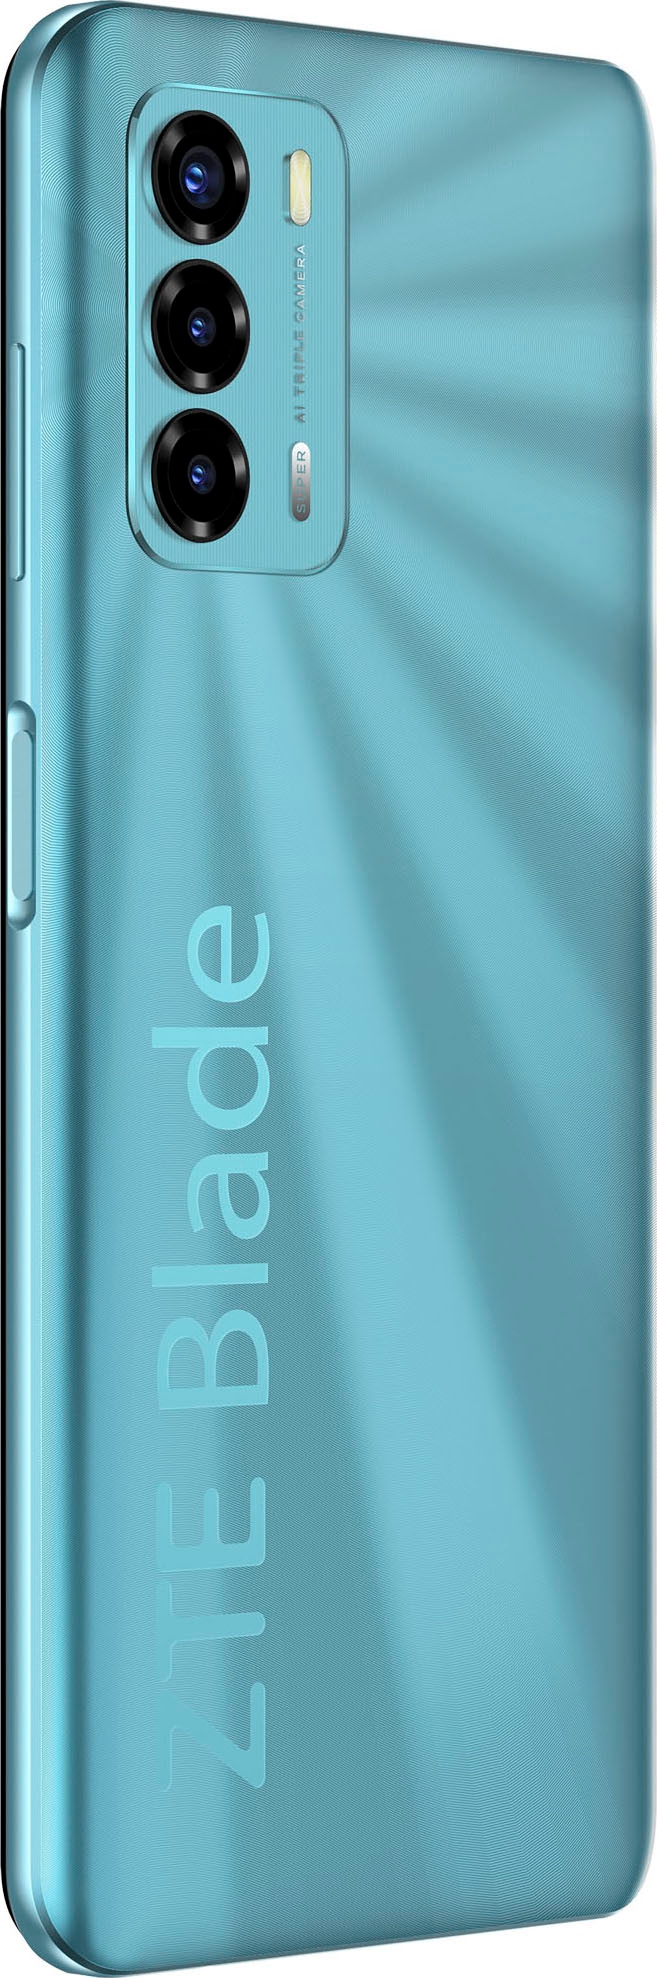 ZTE Smartphone »Blade V40 Vita«, schwarz, 17,1 cm/6,75 Zoll, 128 GB  Speicherplatz, 48 MP Kamera jetzt bestellen bei OTTO